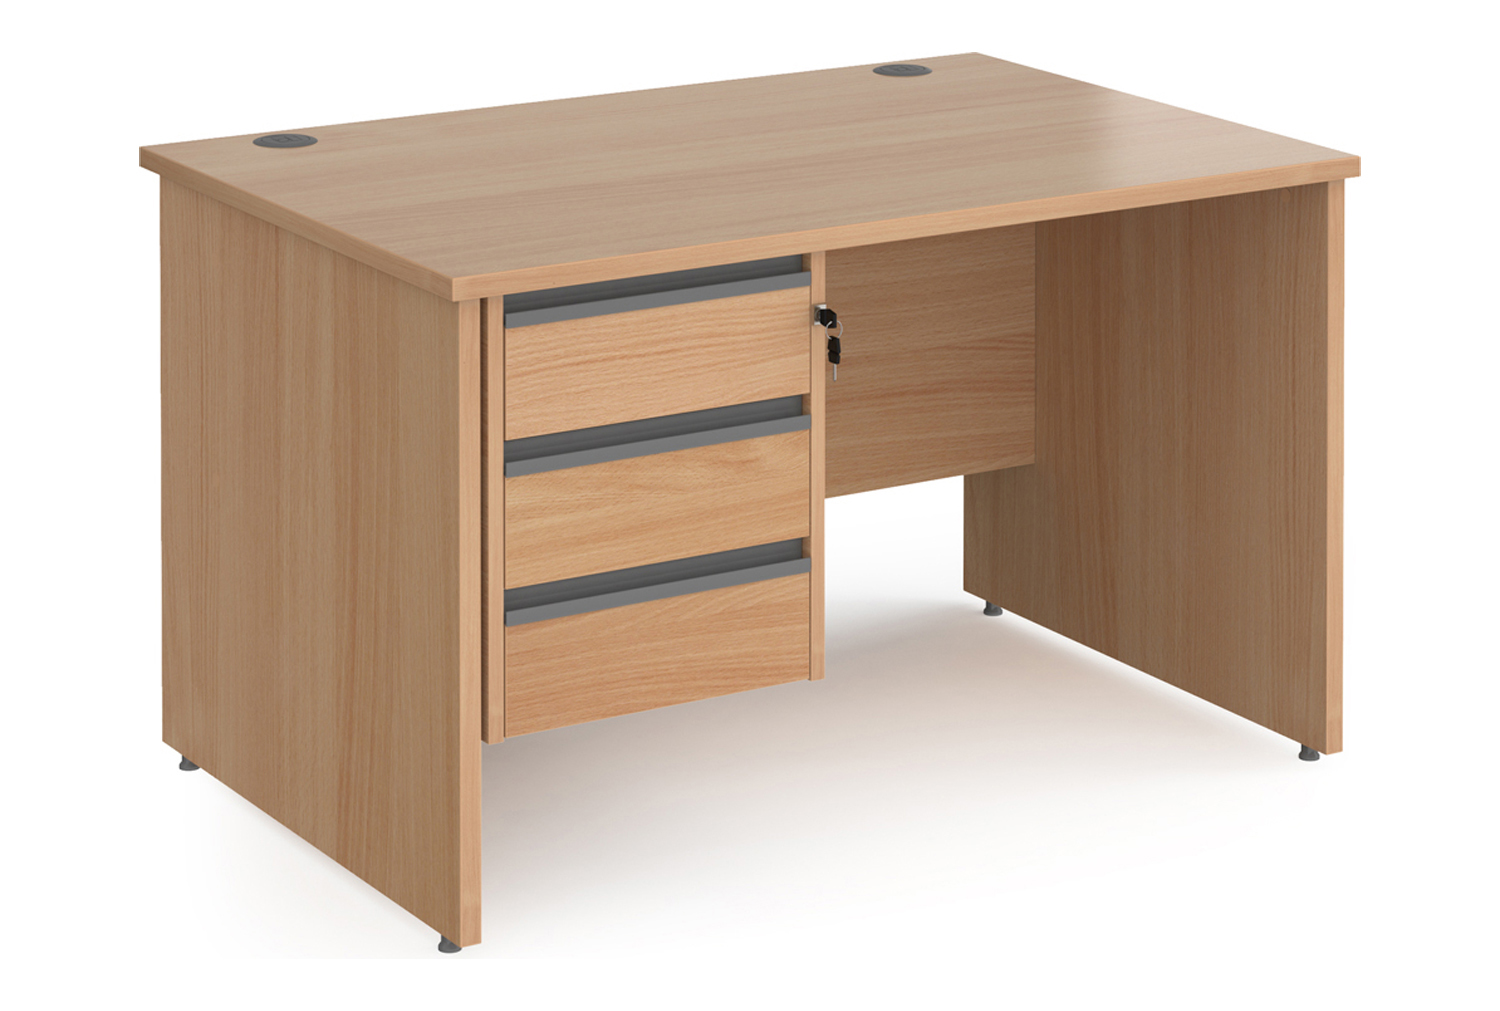 Value Line Classic+ Panel End Office Desk 3 Drawers (Graphite Slats), 120wx80dx73h (cm), Beech